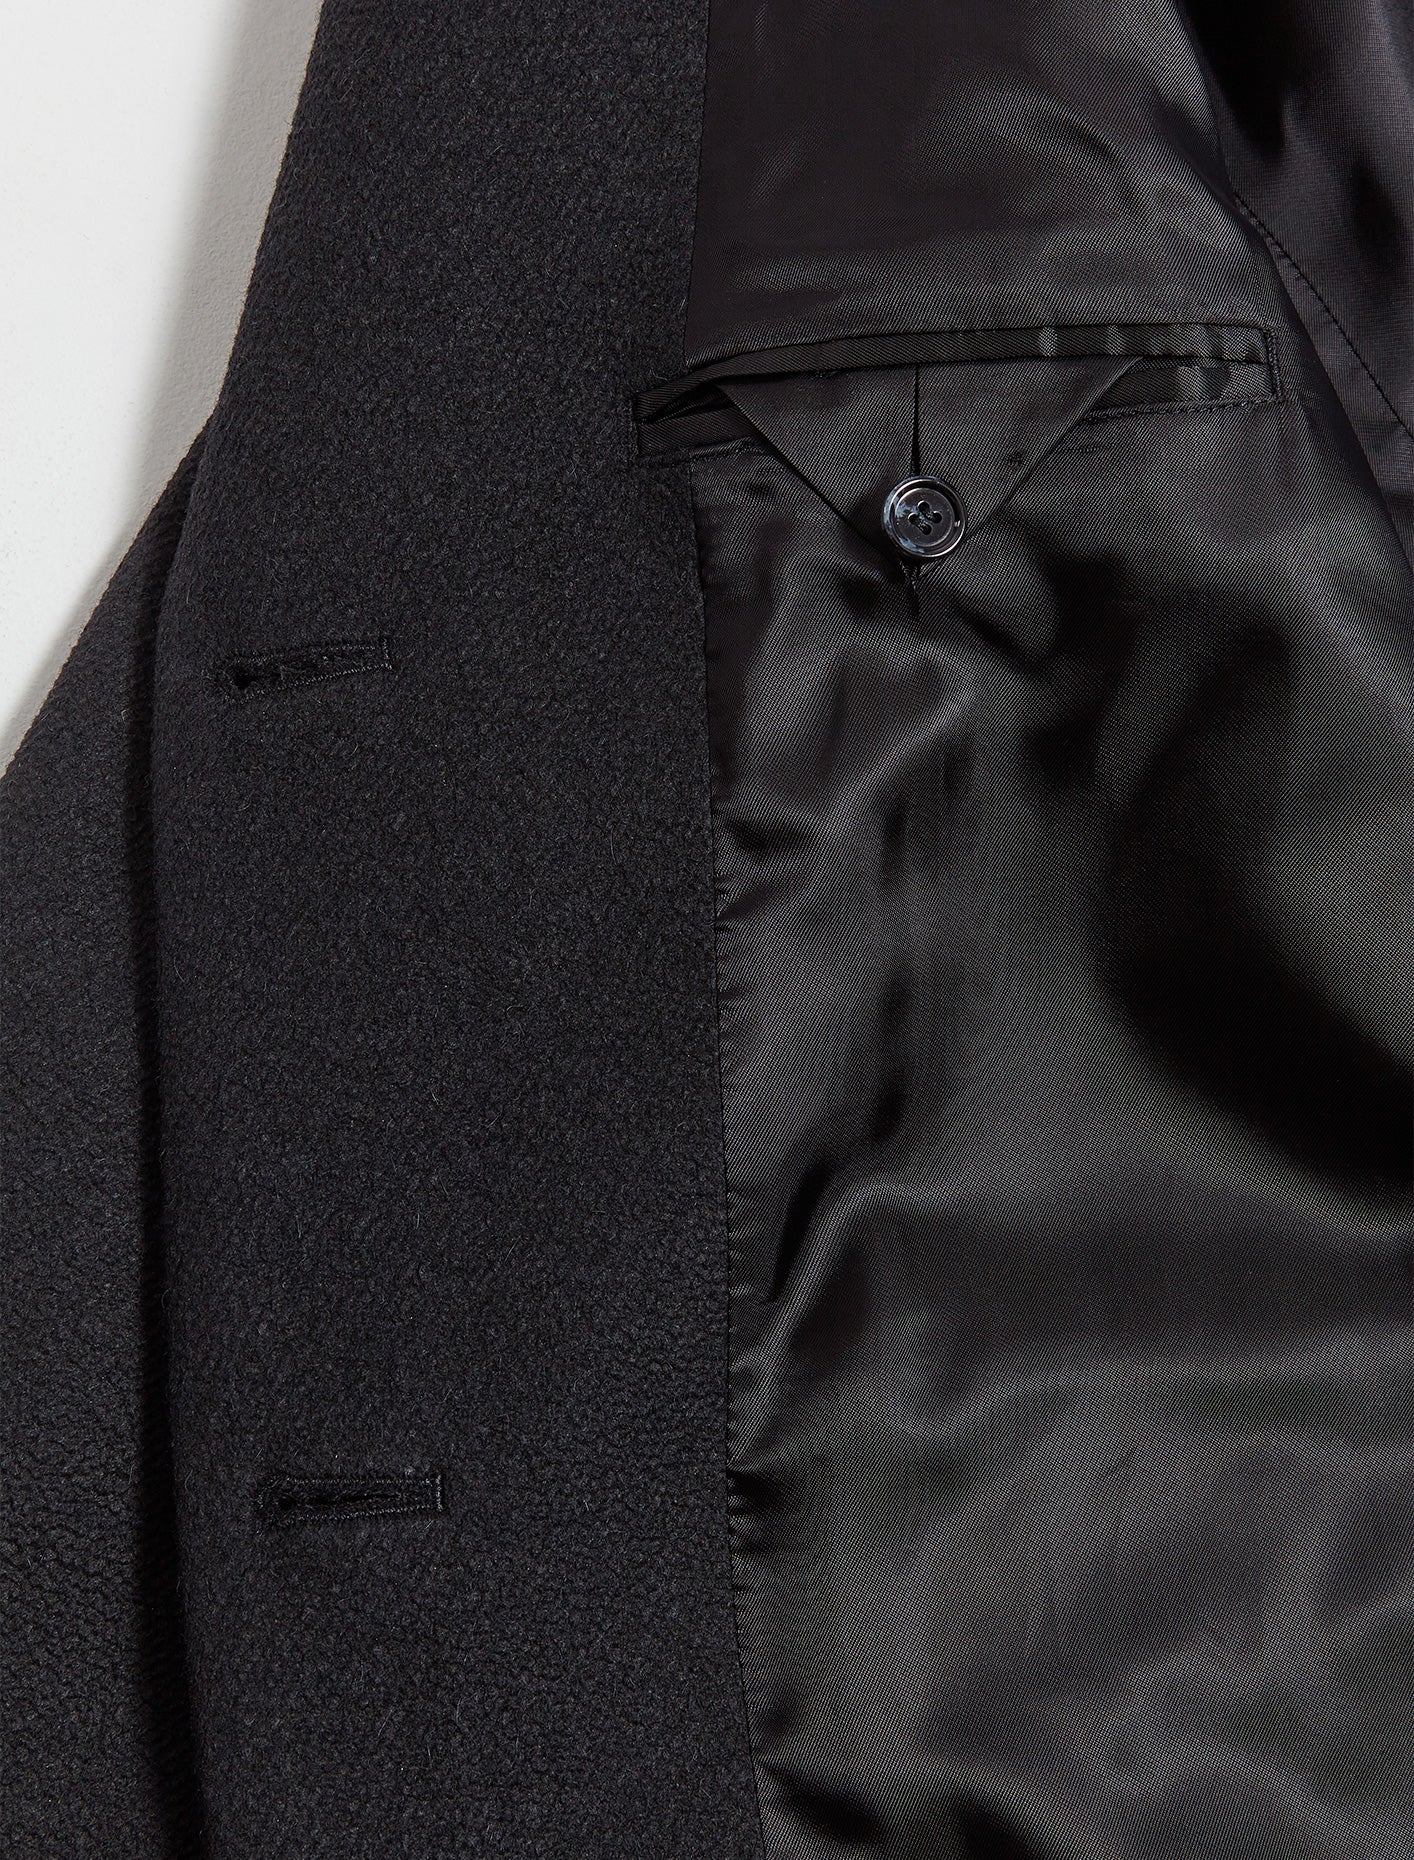 Acne Studios Tailored Twill Coat, Black